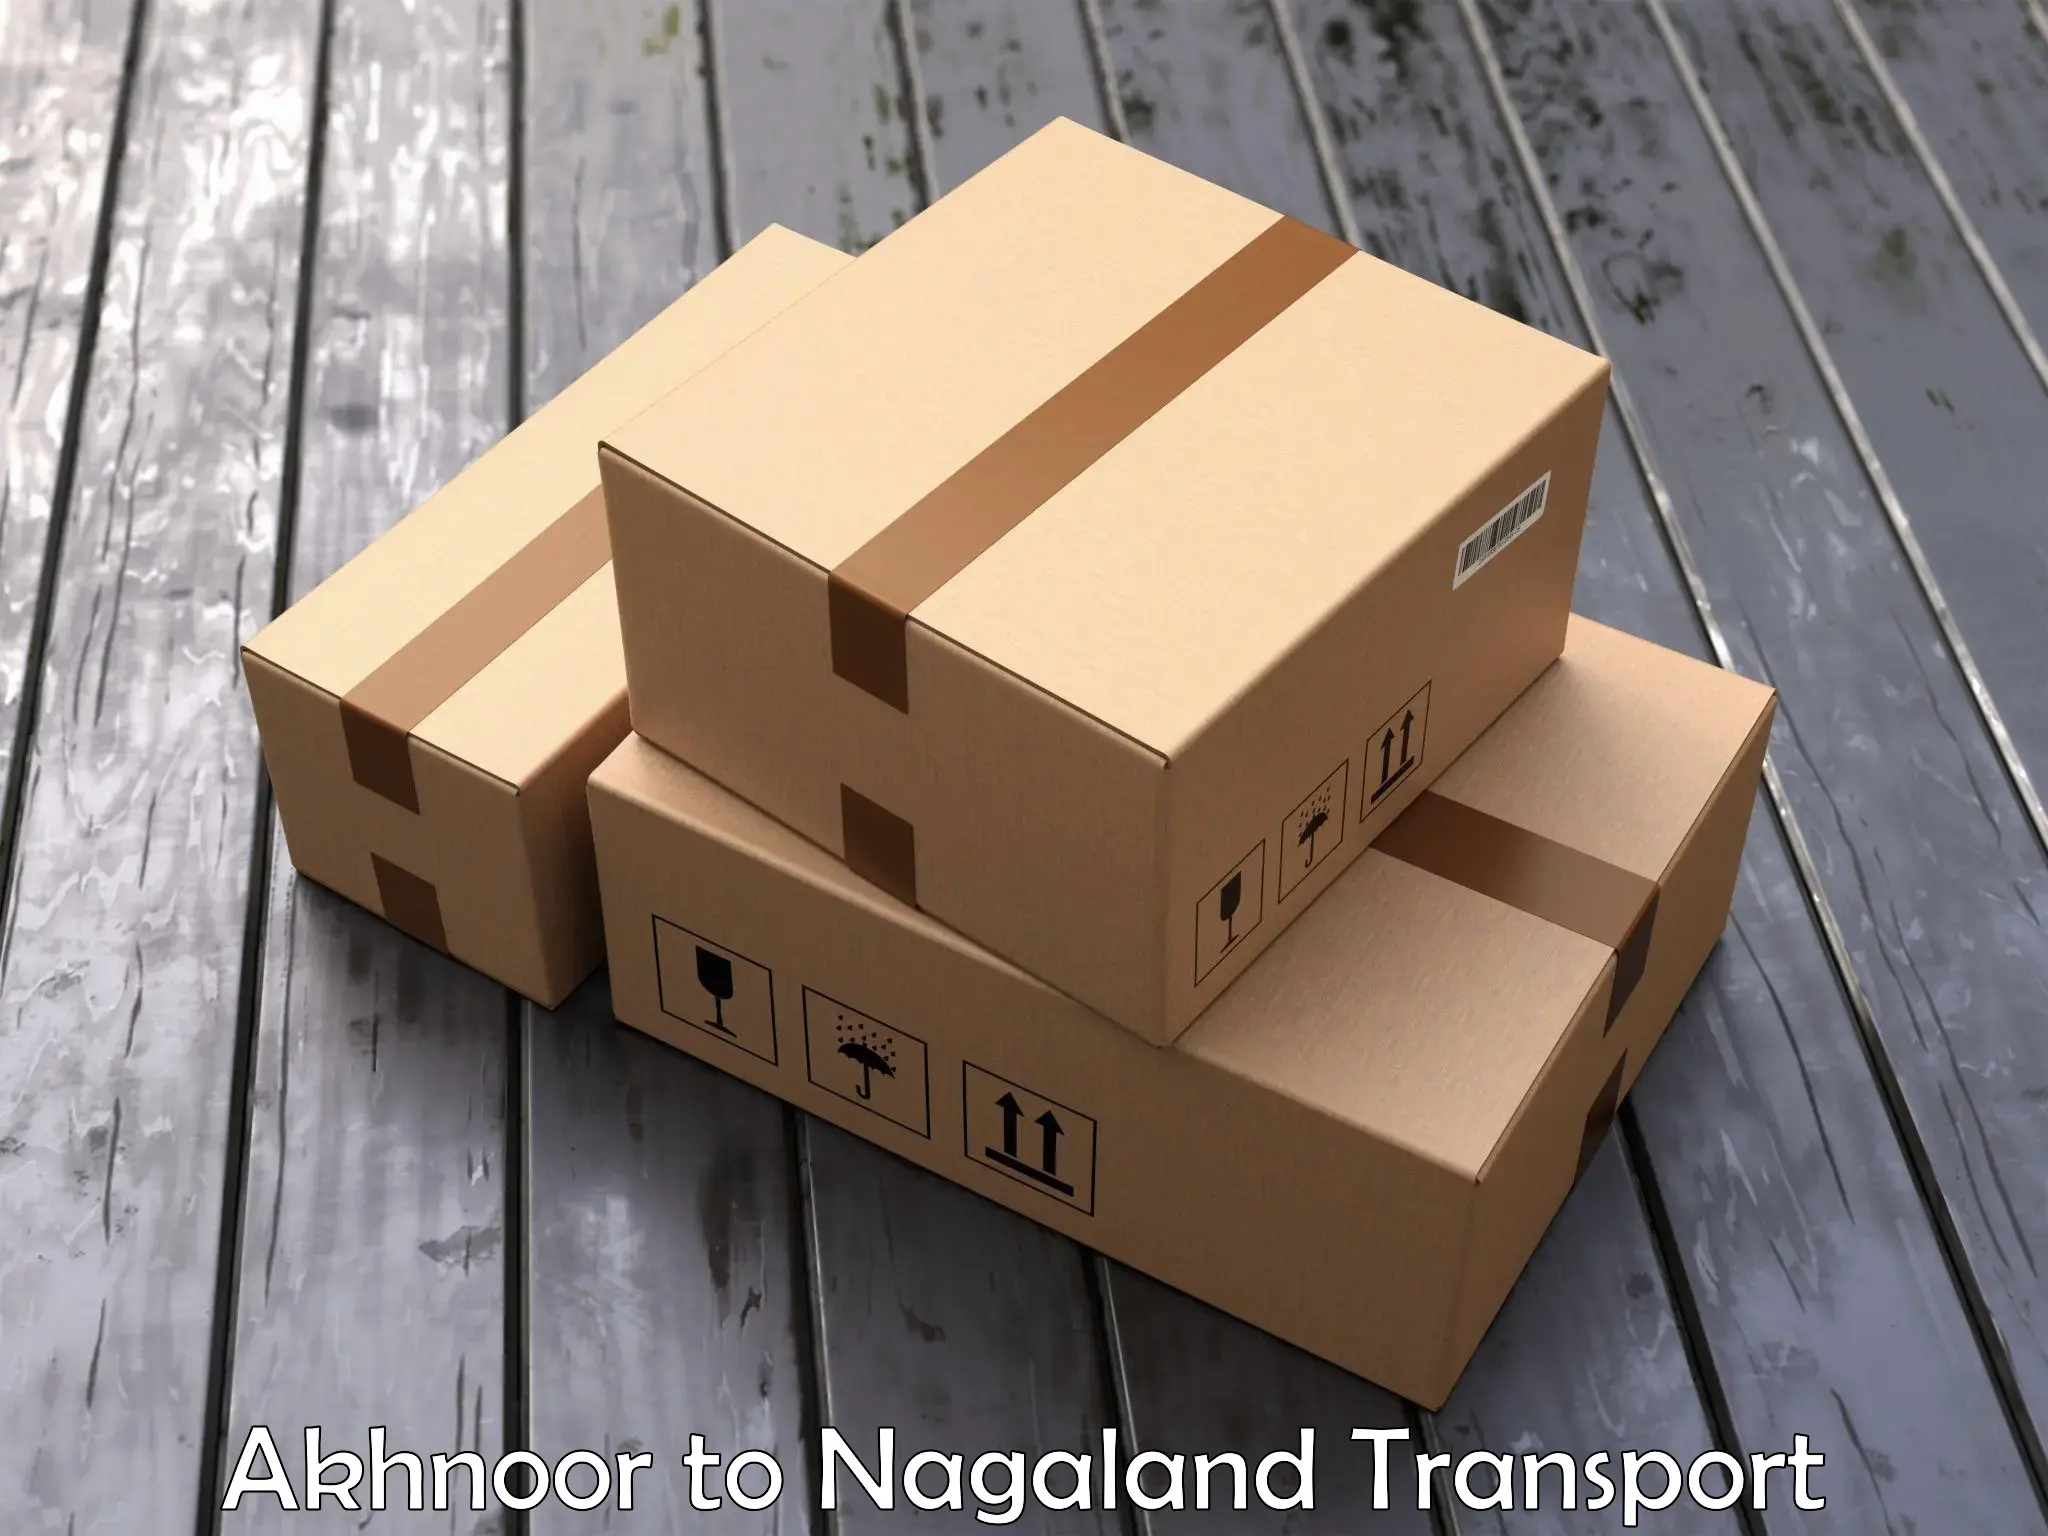 Nearest transport service Akhnoor to Longleng